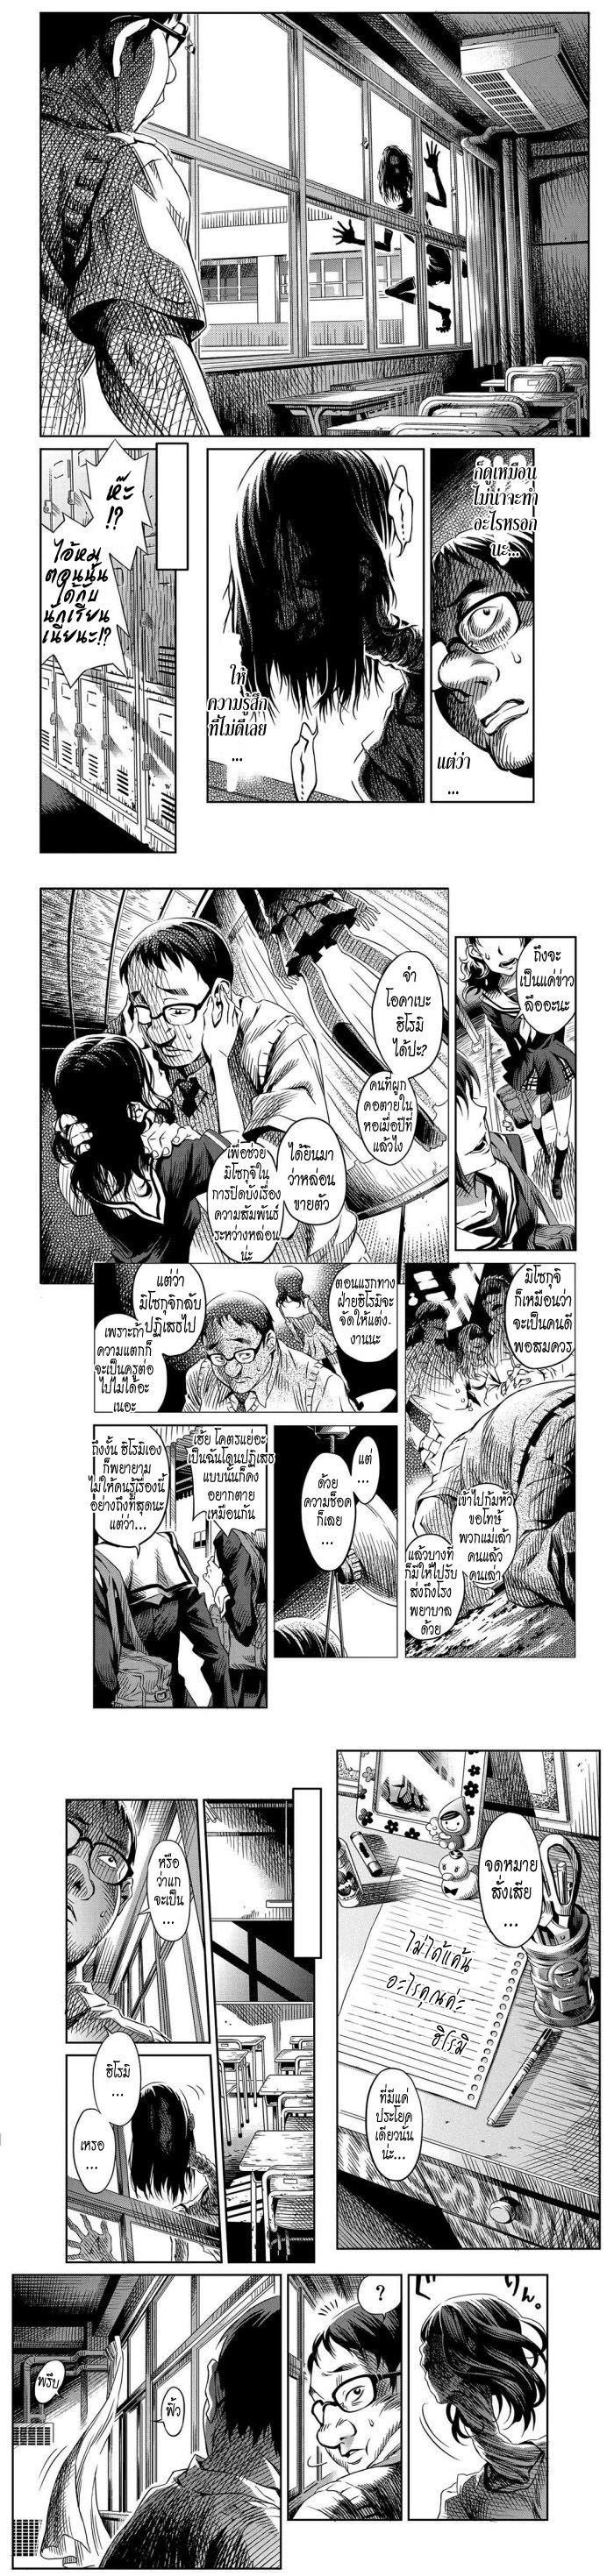 Tsumikumono - หน้า 2